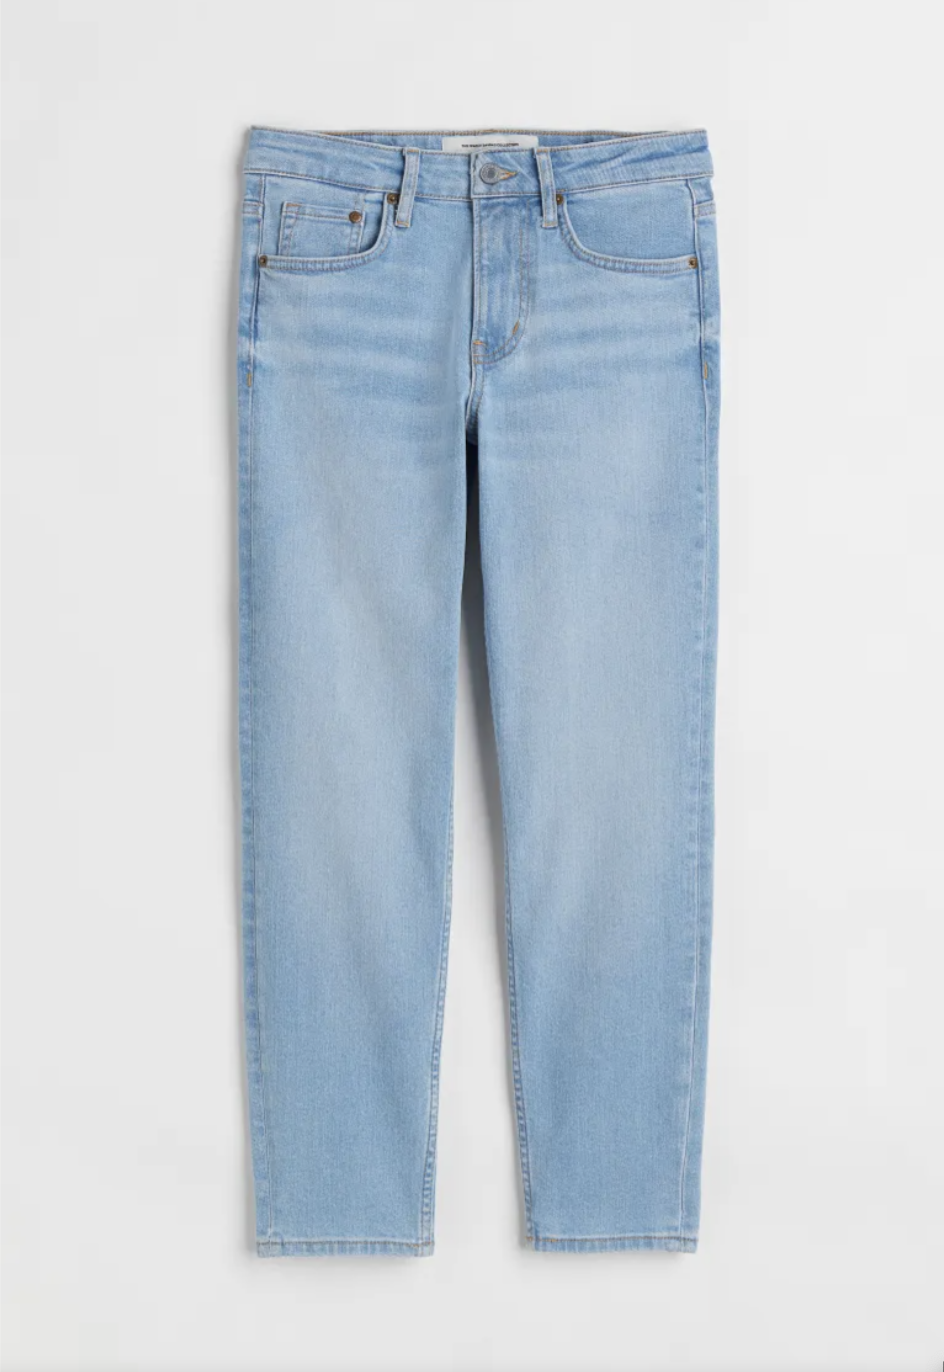 90s skinny regular ankle jeans - light denim blue